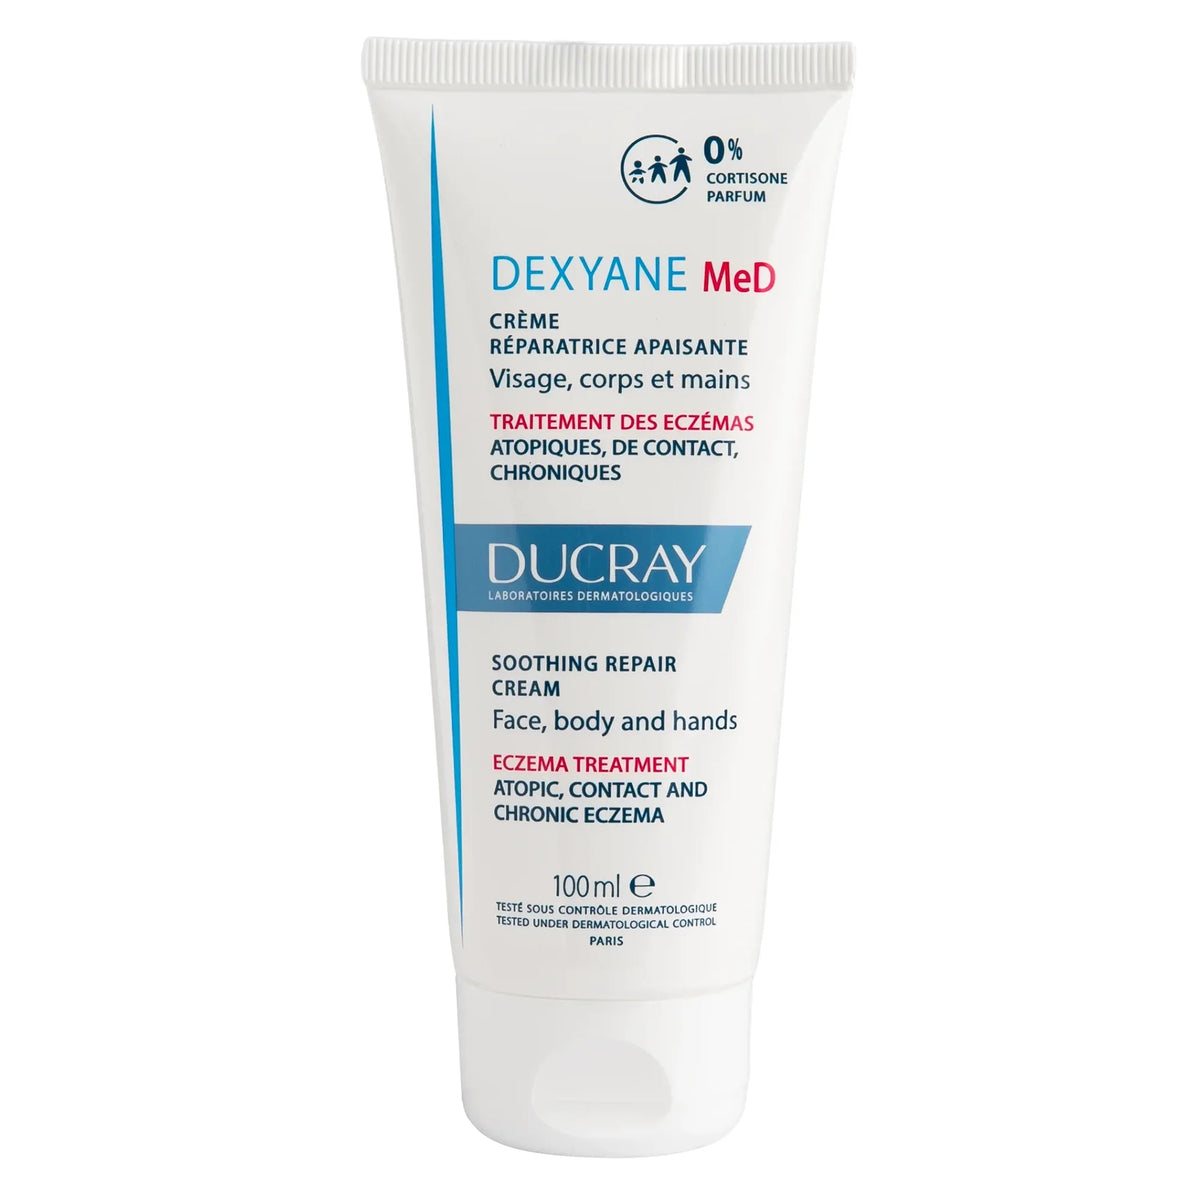 Dexyane Med Soothing Repair Cream